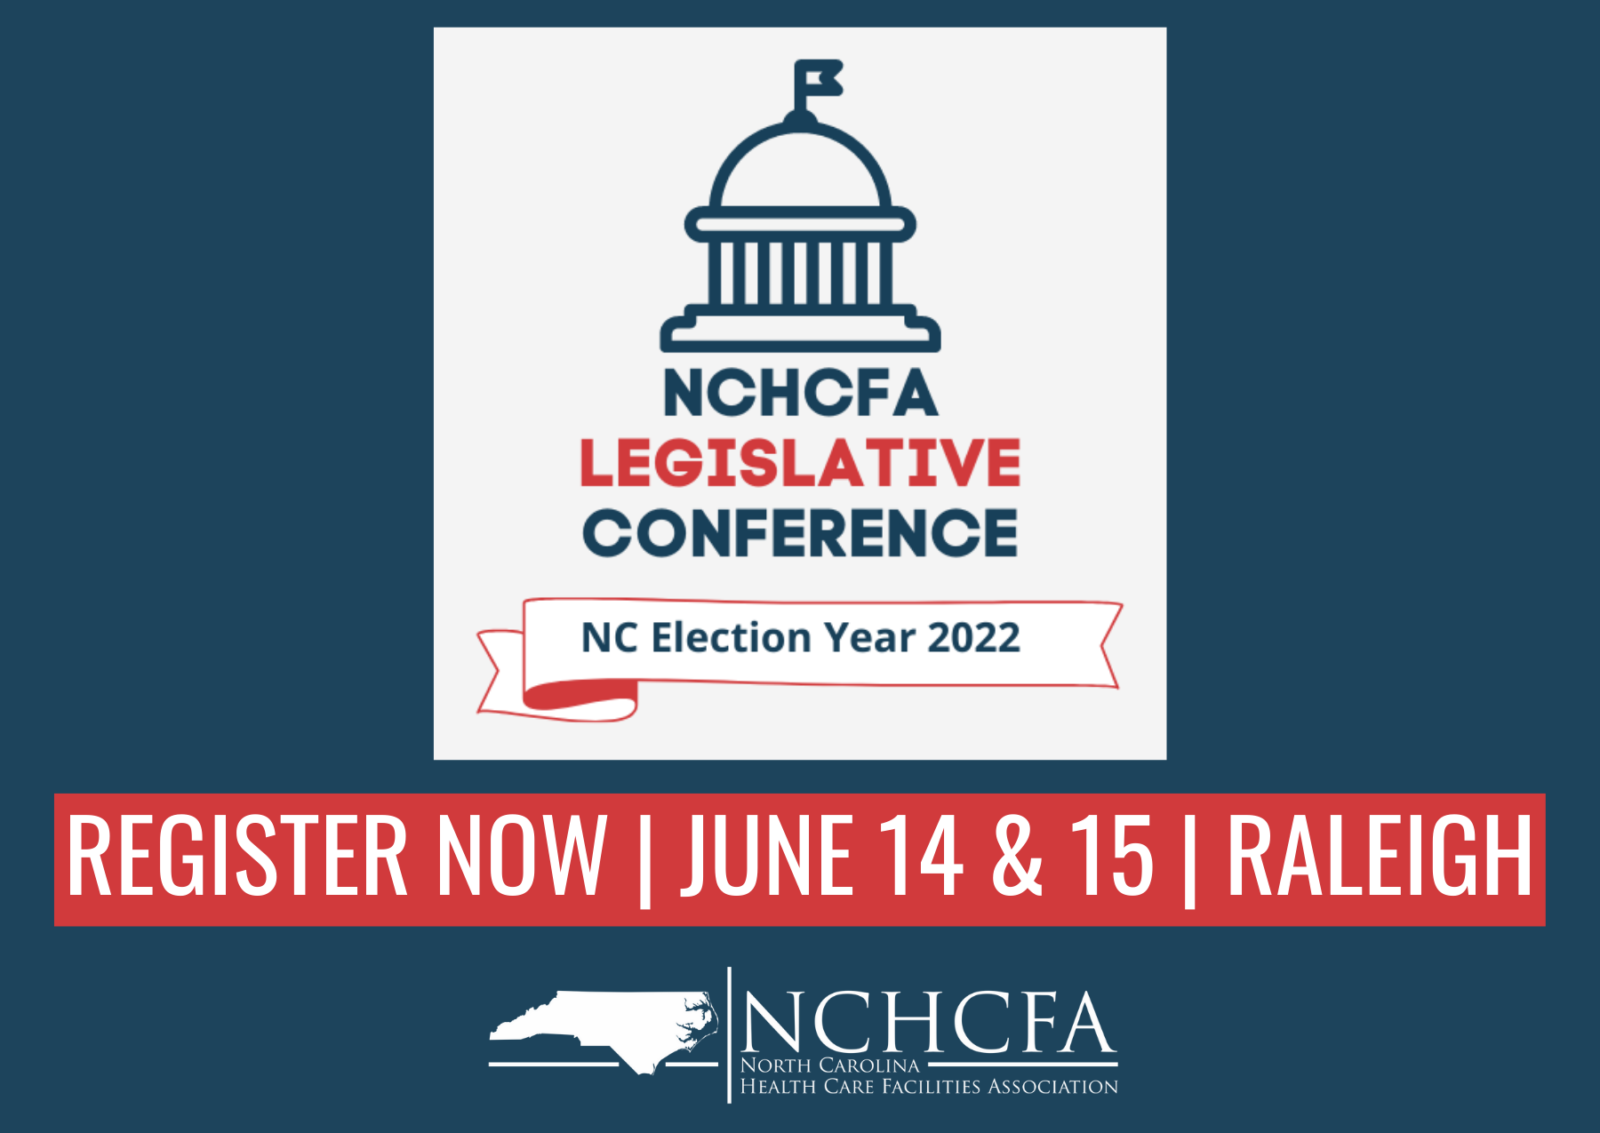 Legislative Conference registration